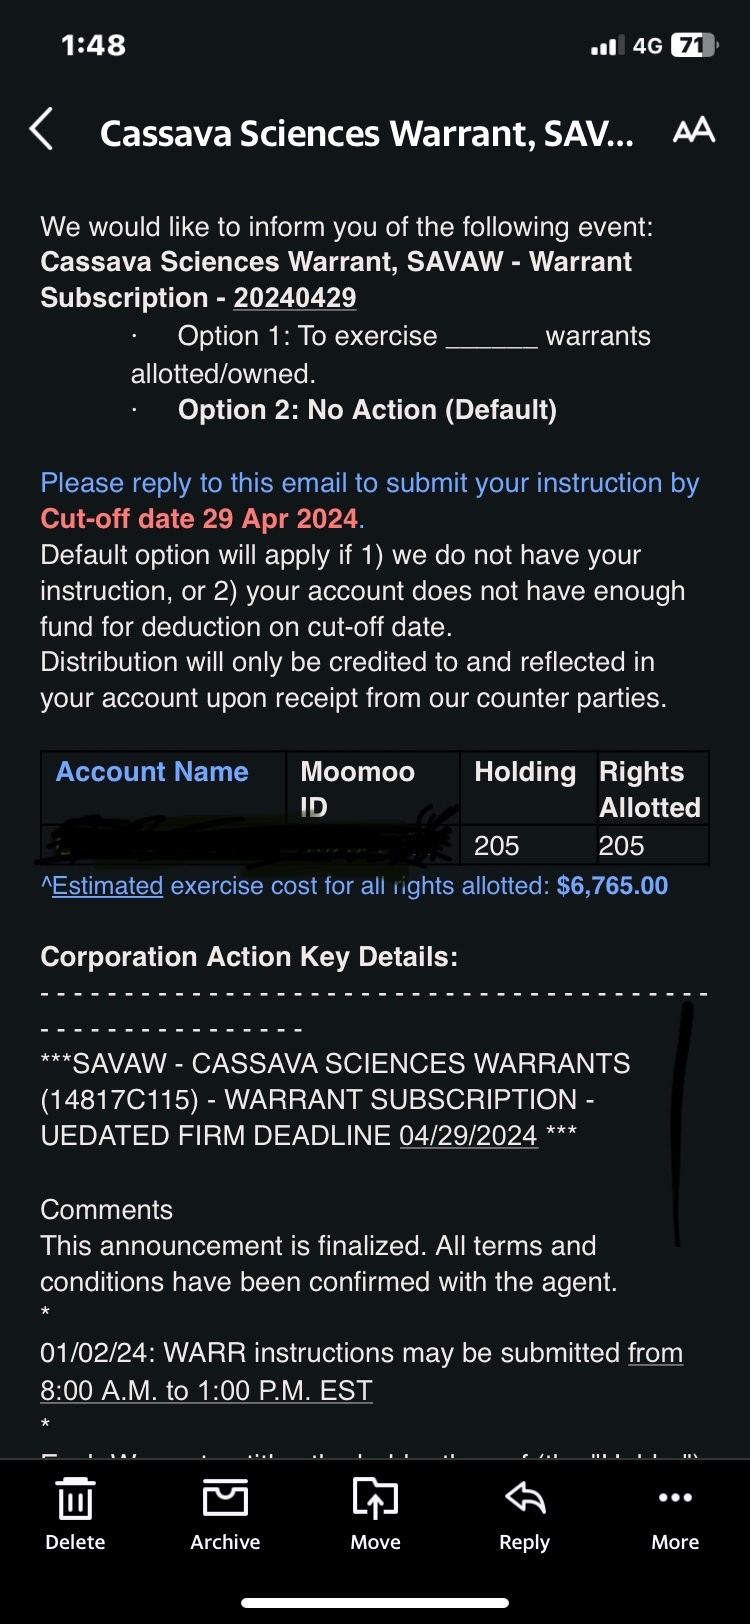 $Cassava Sciences Warrants (SAVAW.US)$ 收到這個email,應該怎樣處理呢？謝謝邦忙！